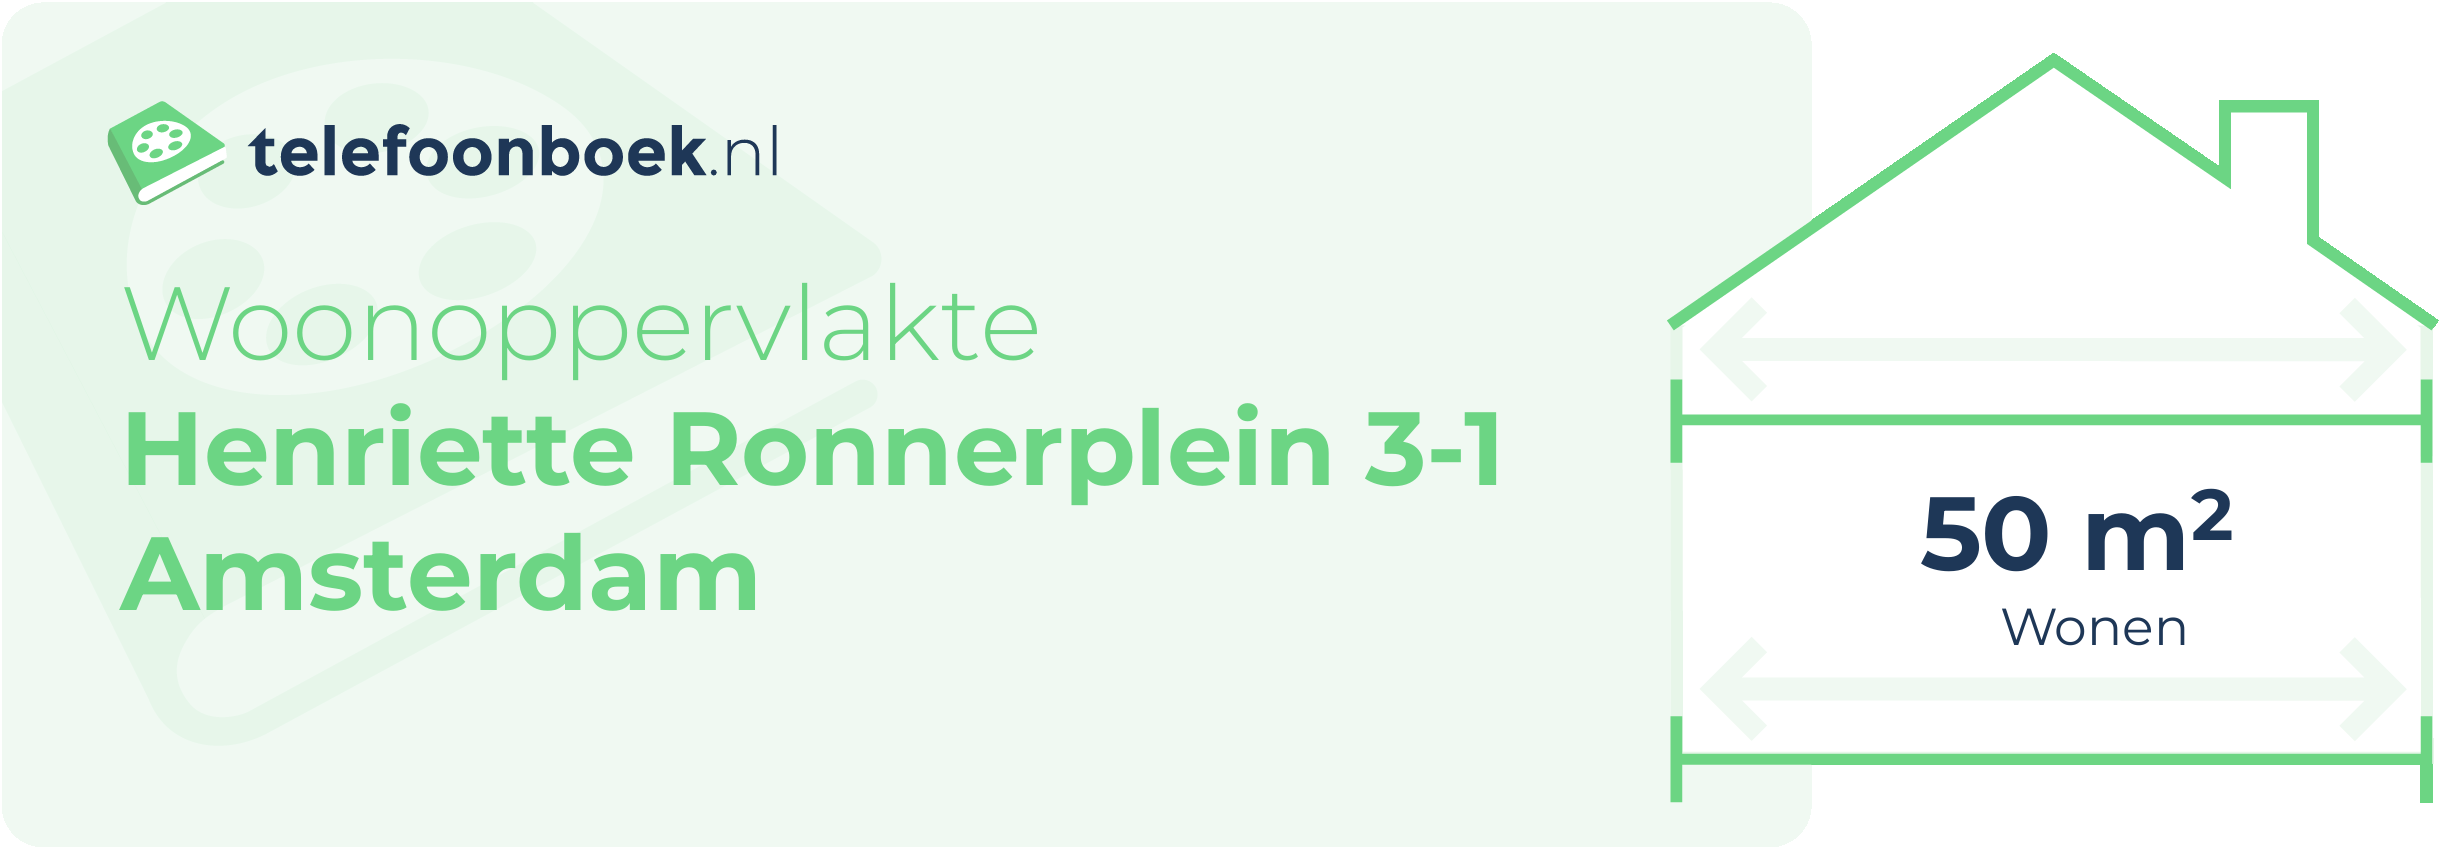 Woonoppervlakte Henriette Ronnerplein 3-1 Amsterdam